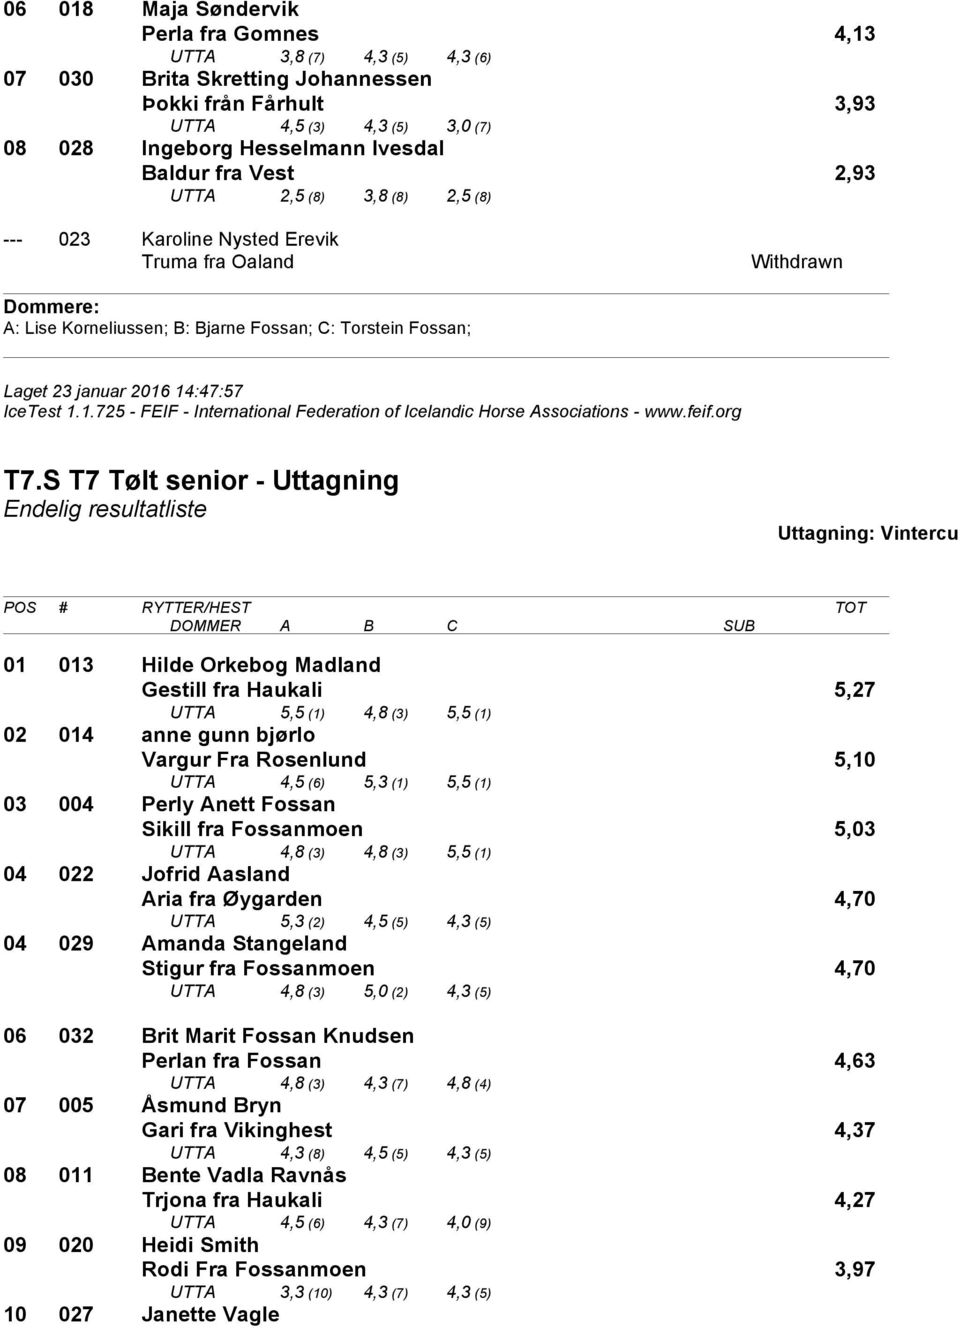 S T7 Tølt senior - Uttagning 01 013 Hilde Orkebog Madland Gestill fra Haukali 5,27 UTTA 5,5 (1) 4,8 (3) 5,5 (1) 02 014 anne gunn bjørlo Vargur Fra Rosenlund 5,10 UTTA 4,5 (6) 5,3 (1) 5,5 (1) 03 004